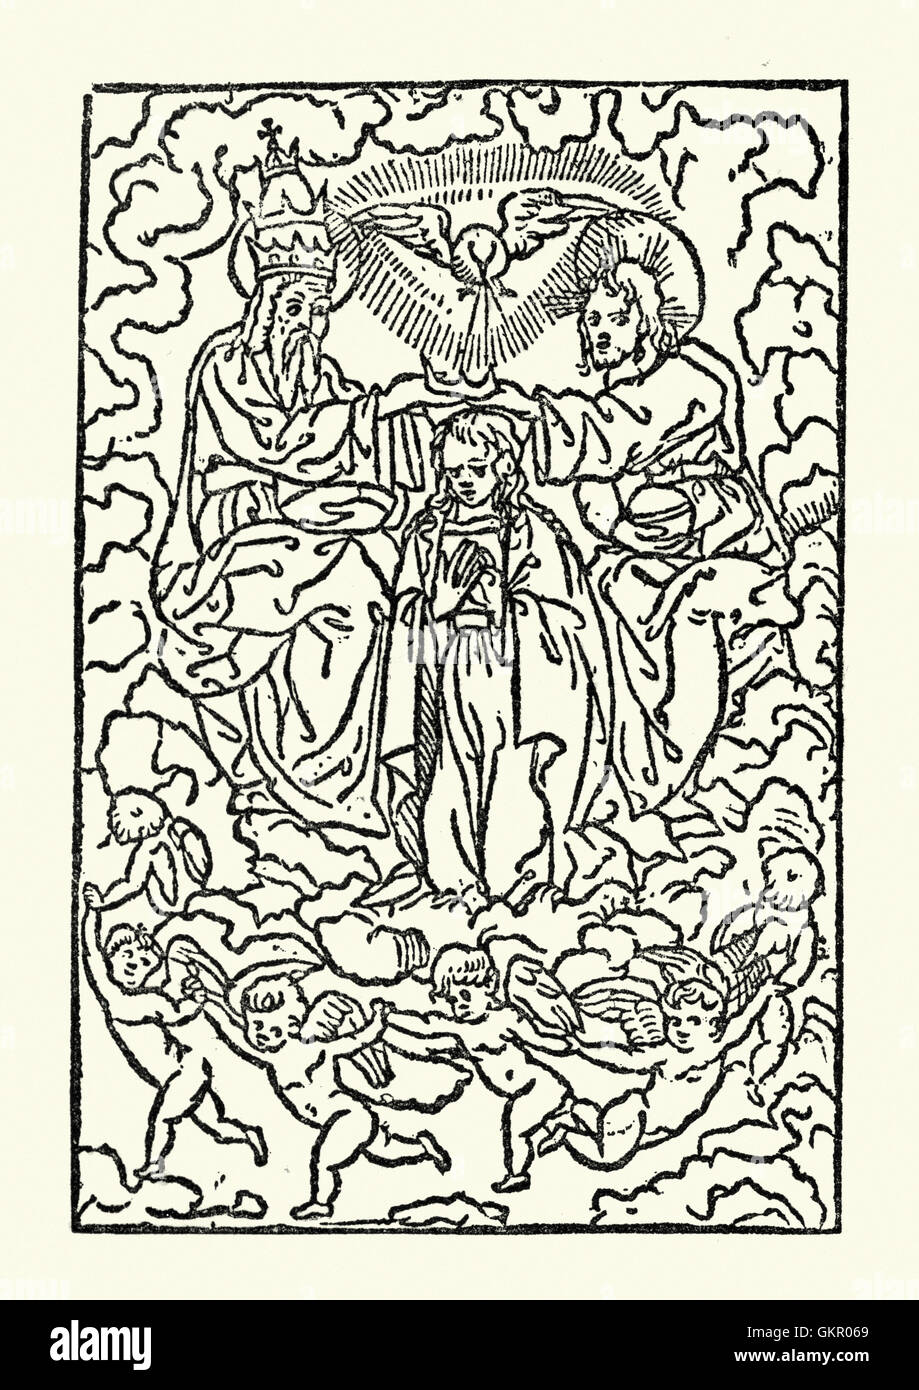 Gravure sur bois de l'Assomption de la Vierge Marie. De Troy's Livre d'heures, c.1525 Banque D'Images